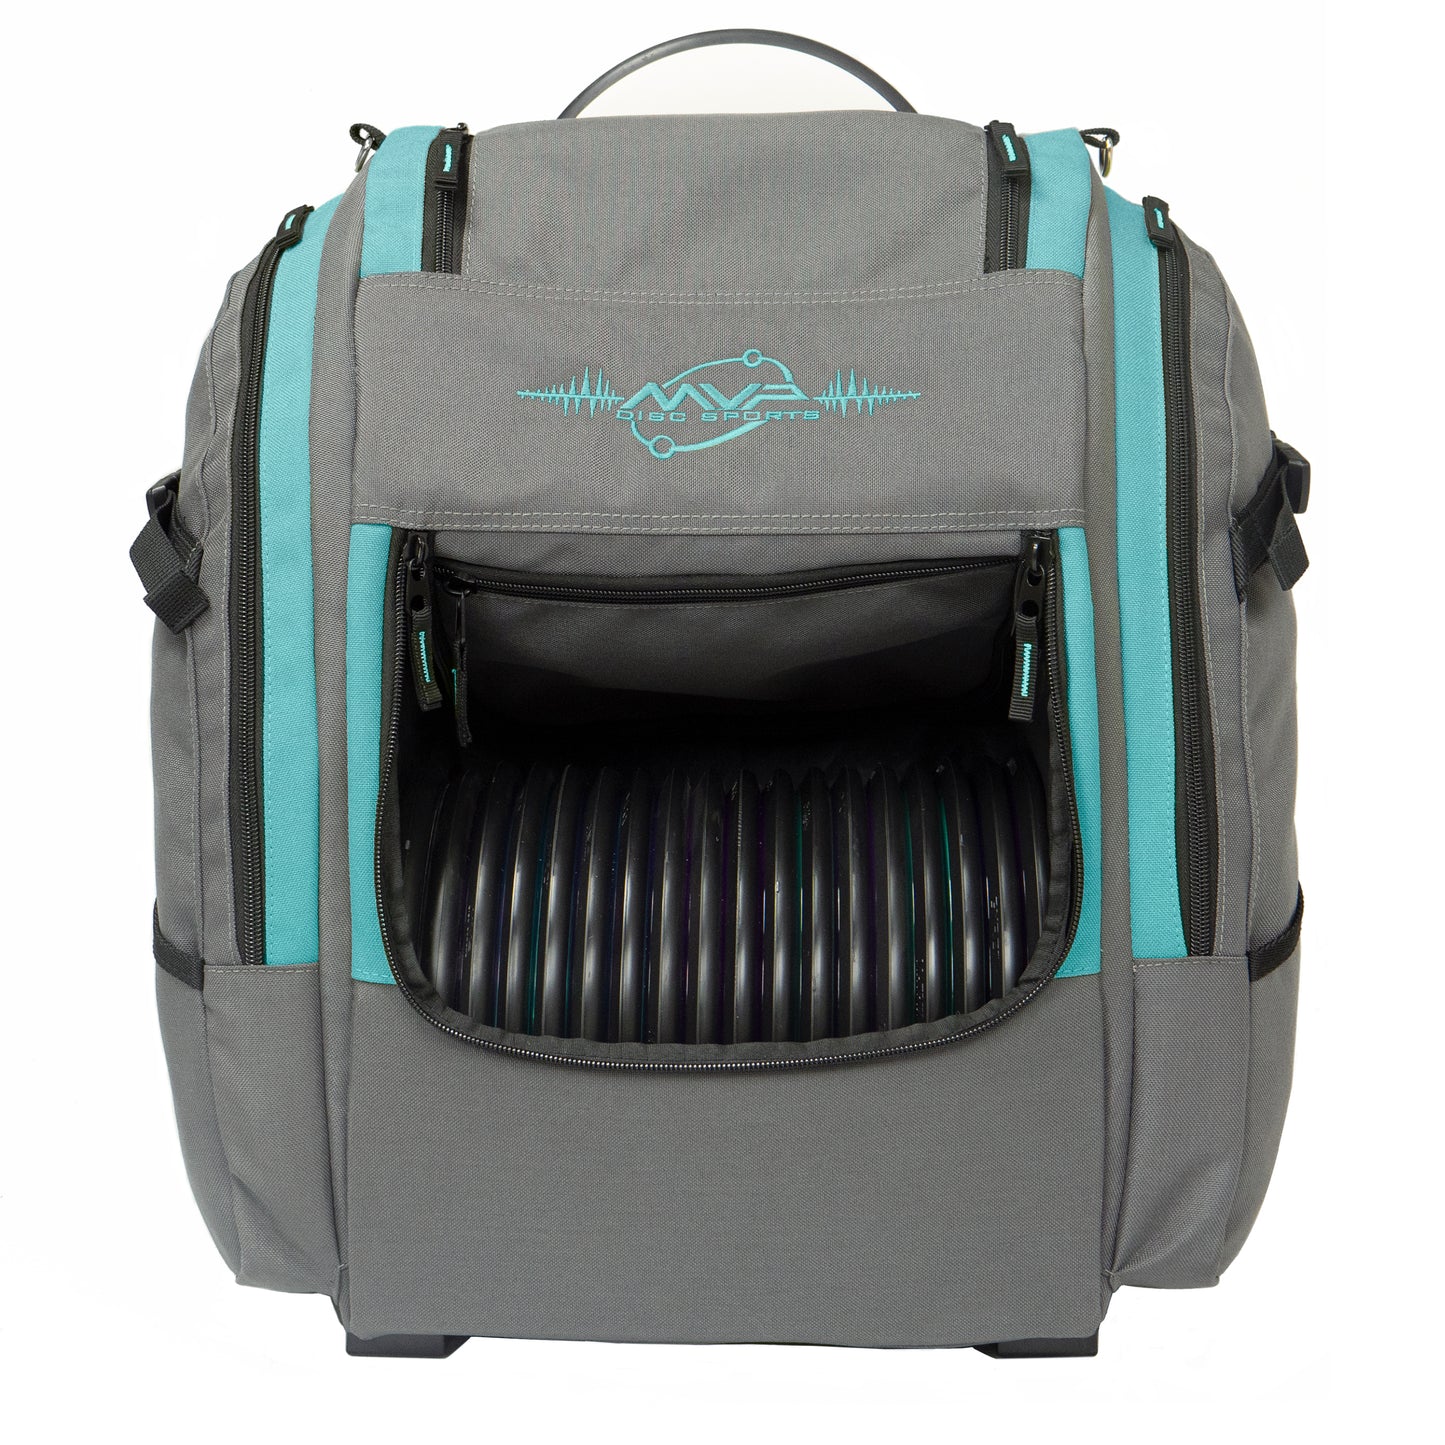 Voyager Pro V2 Backpack